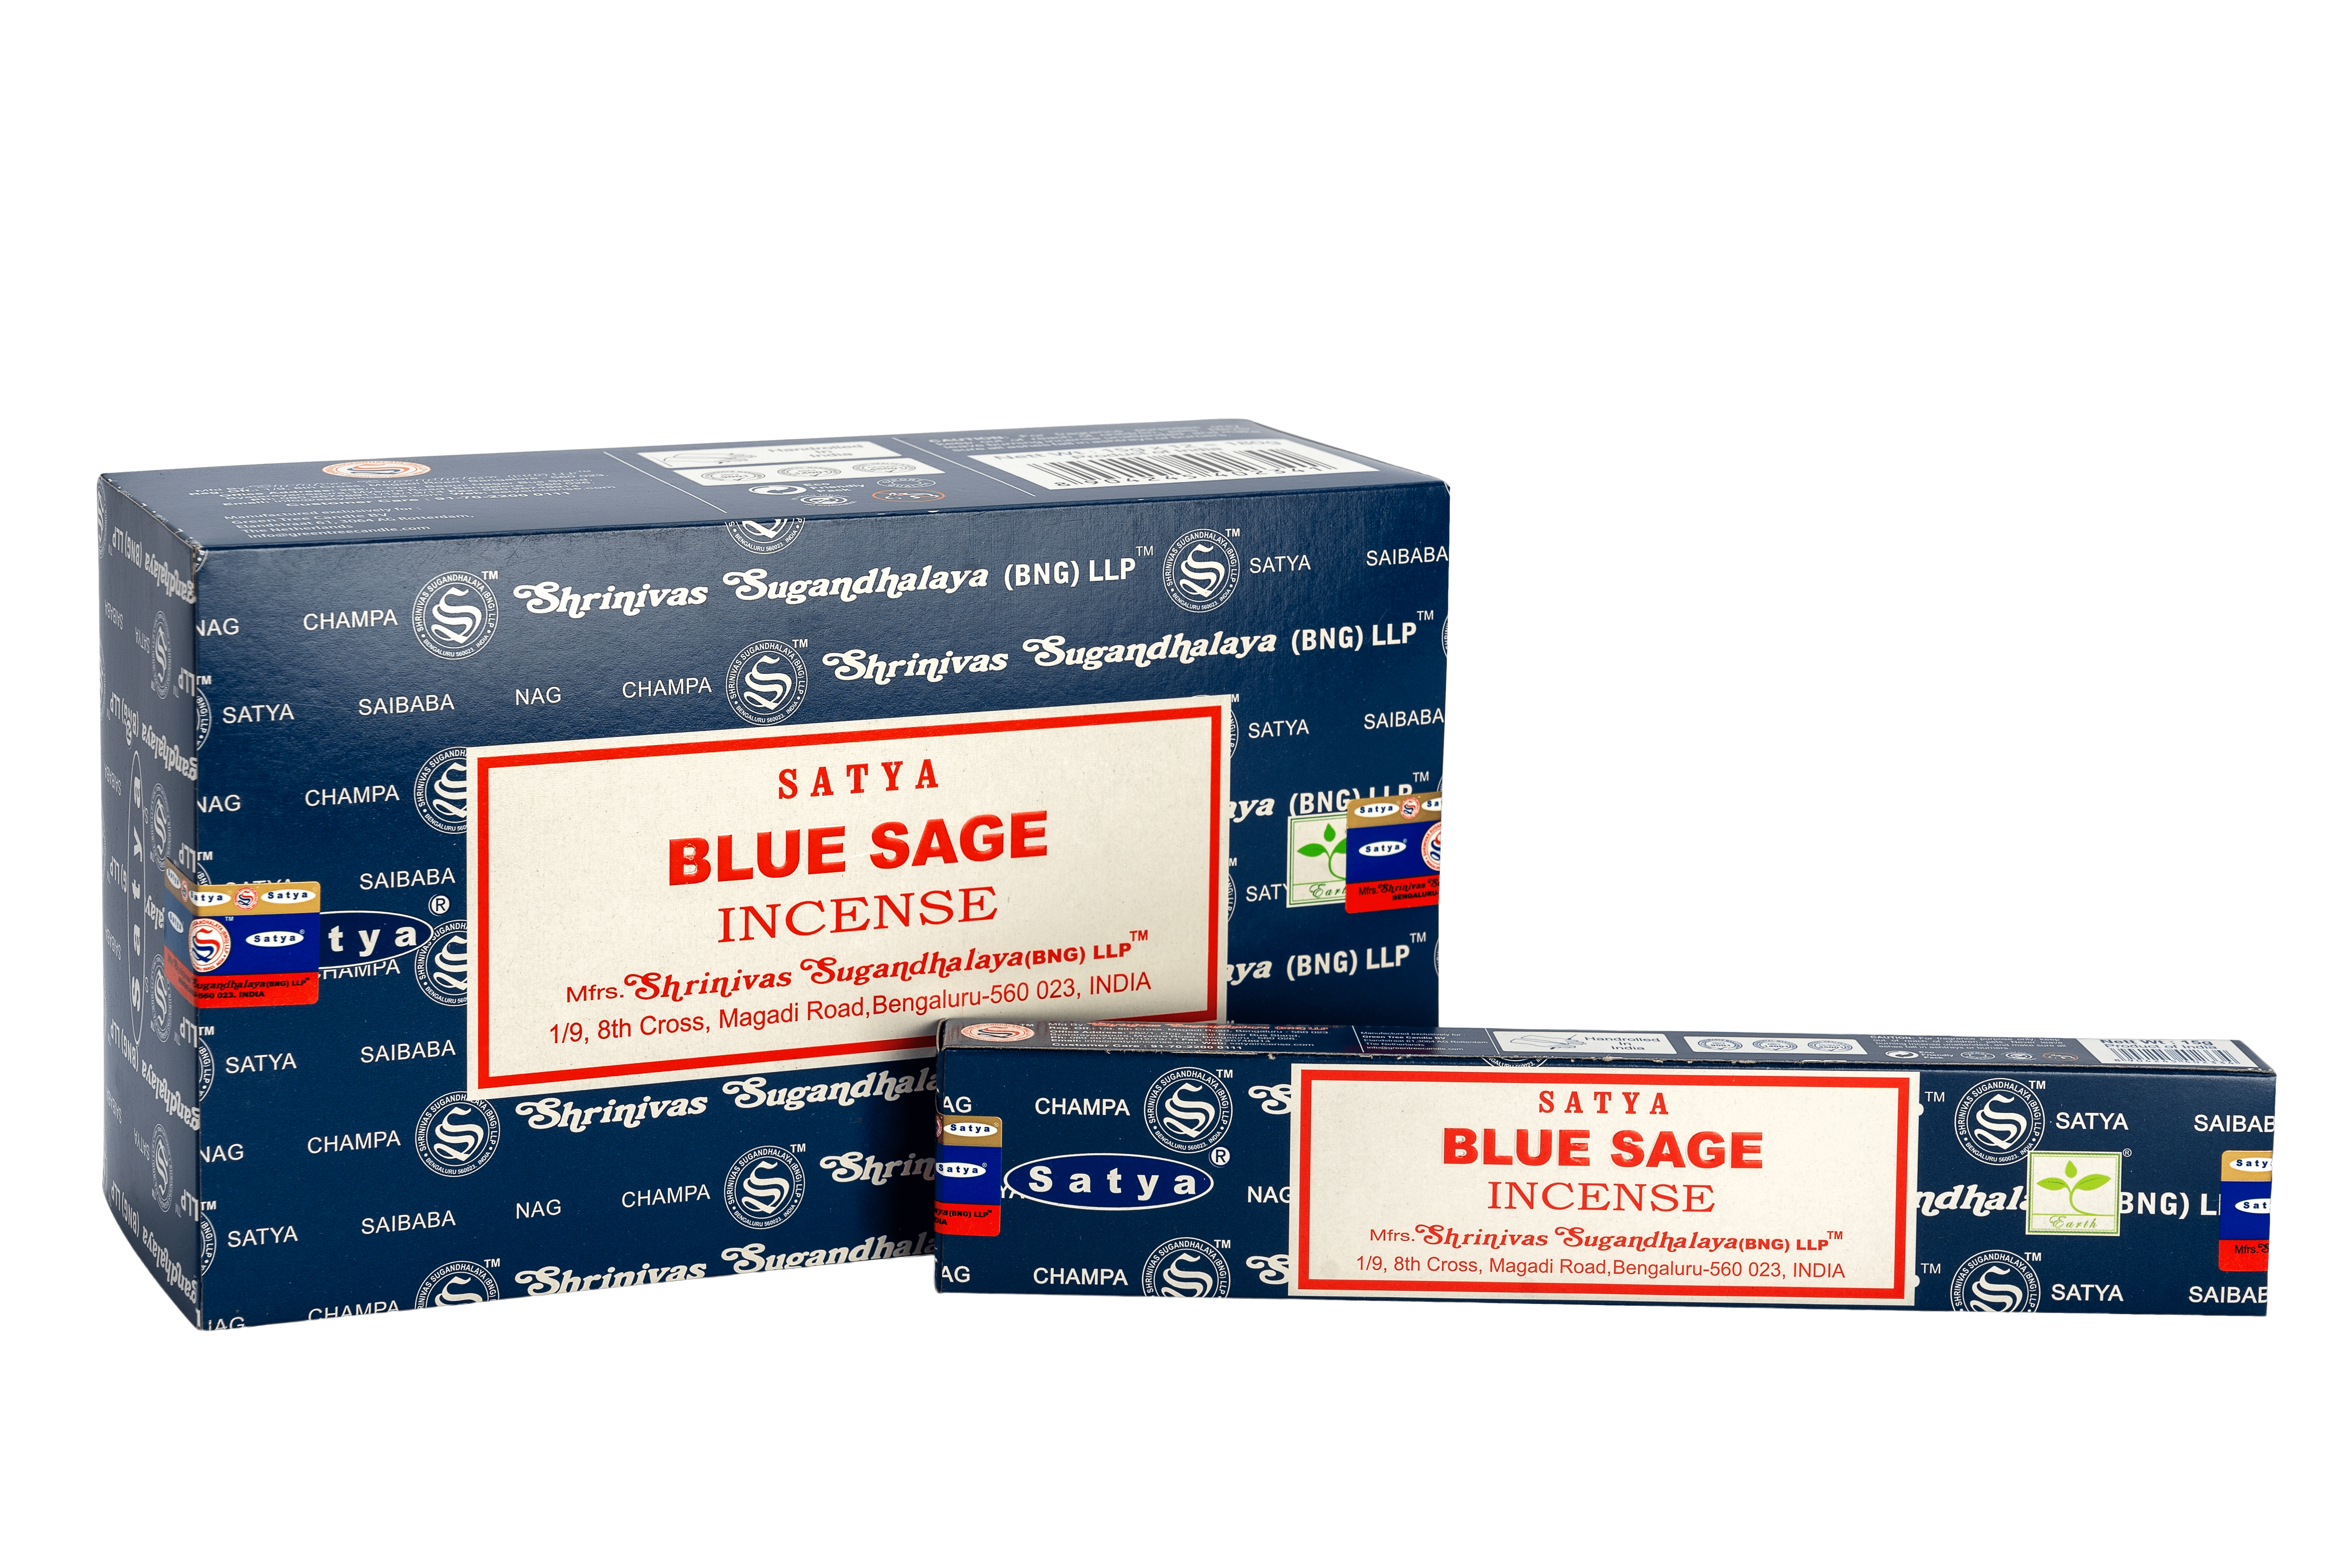 SATYA BLUE SAGE 15G (BNG) (BBR) – 12PK